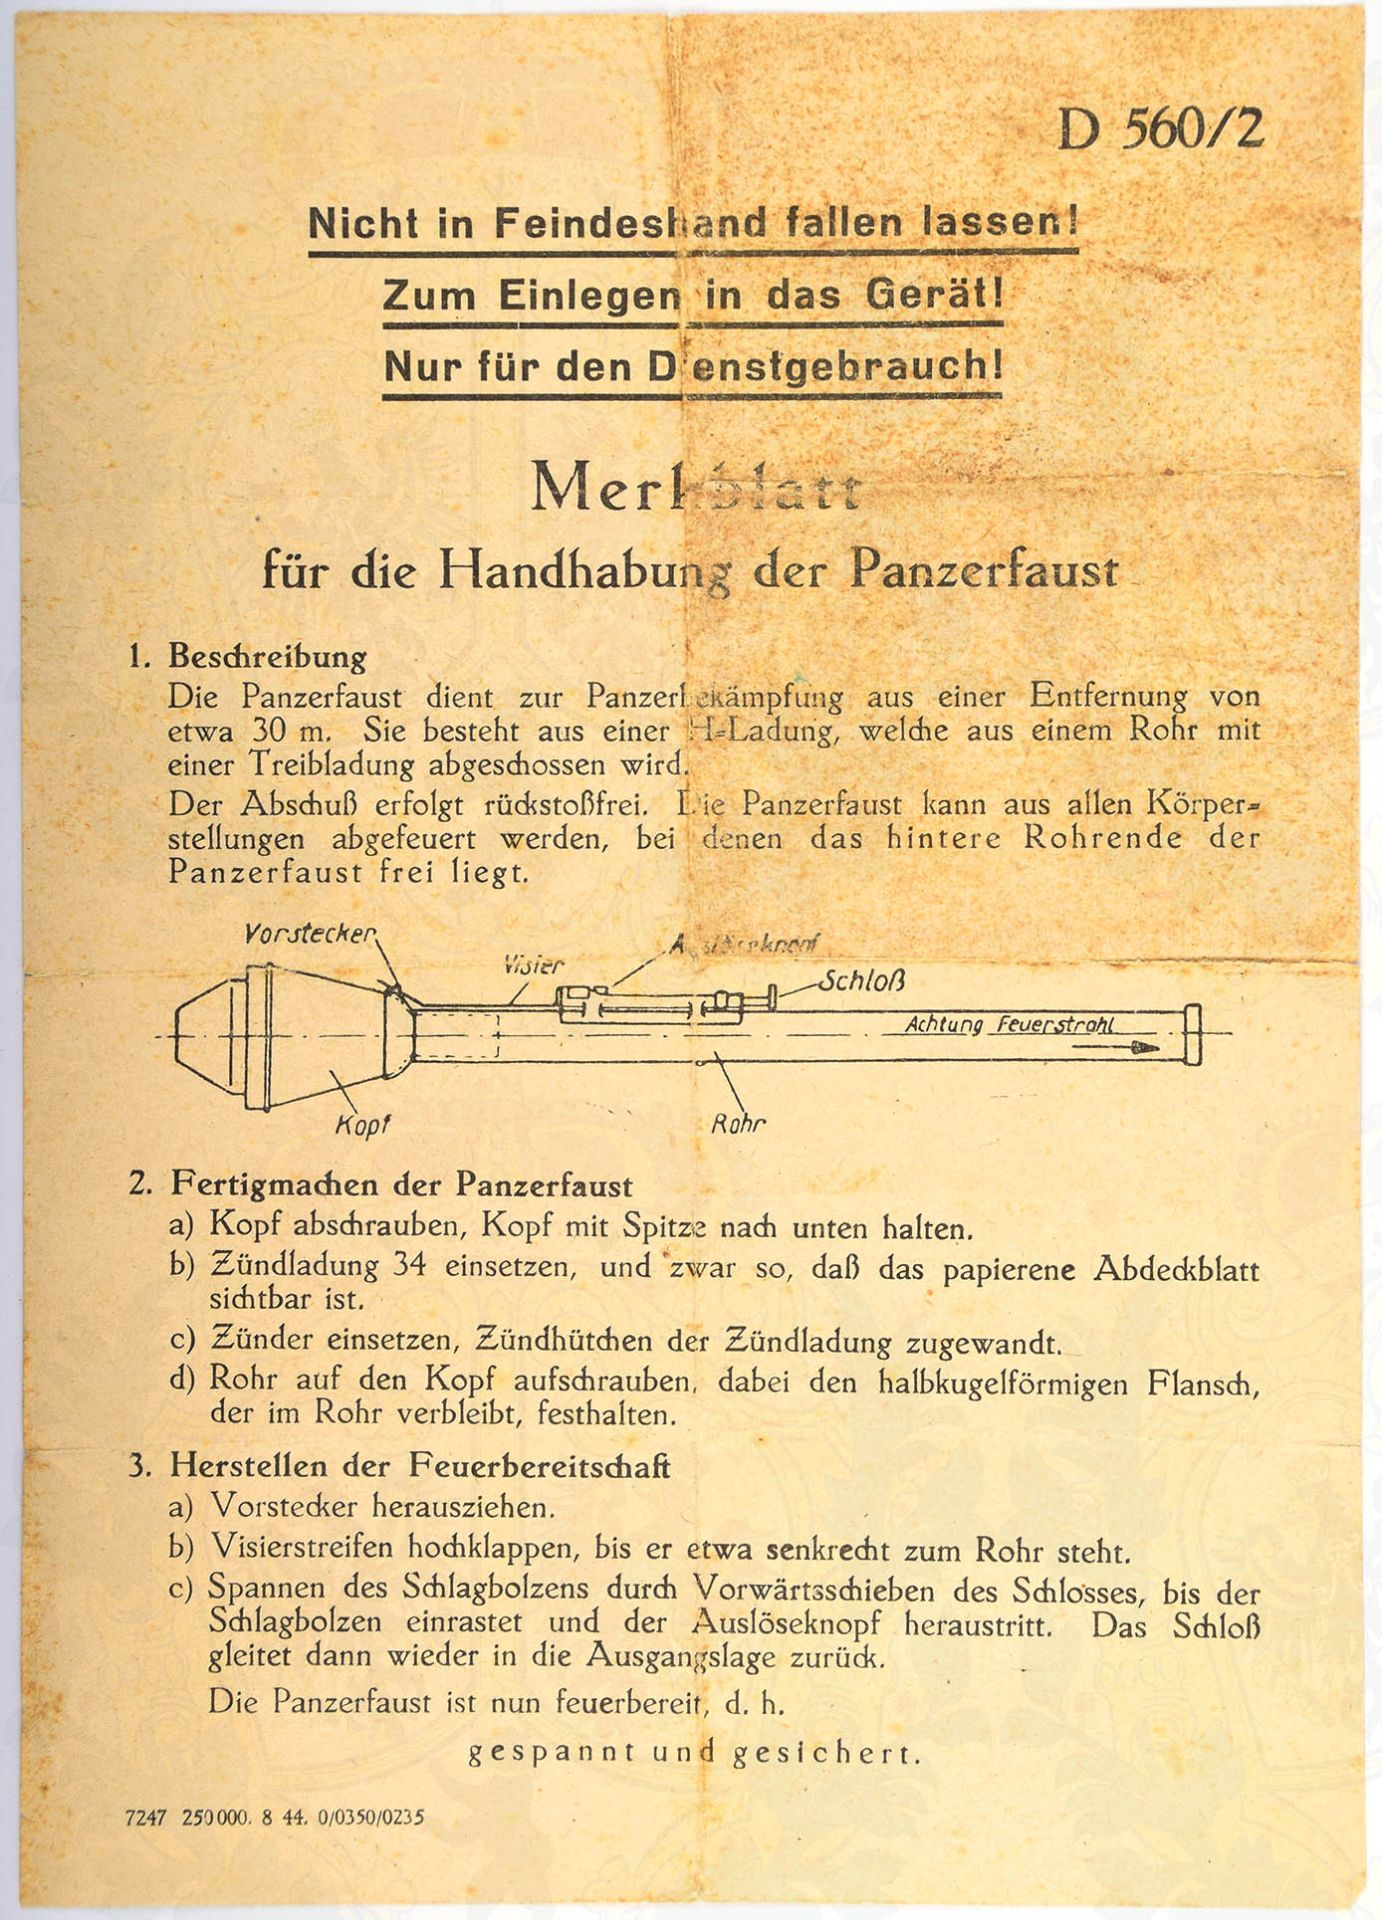 MERKBLATT FÜR DIE HANDHABUNG DER PANZERFAUST, 1944, Skizze u. Beschreibung d. Panzerfaust, „Nicht in